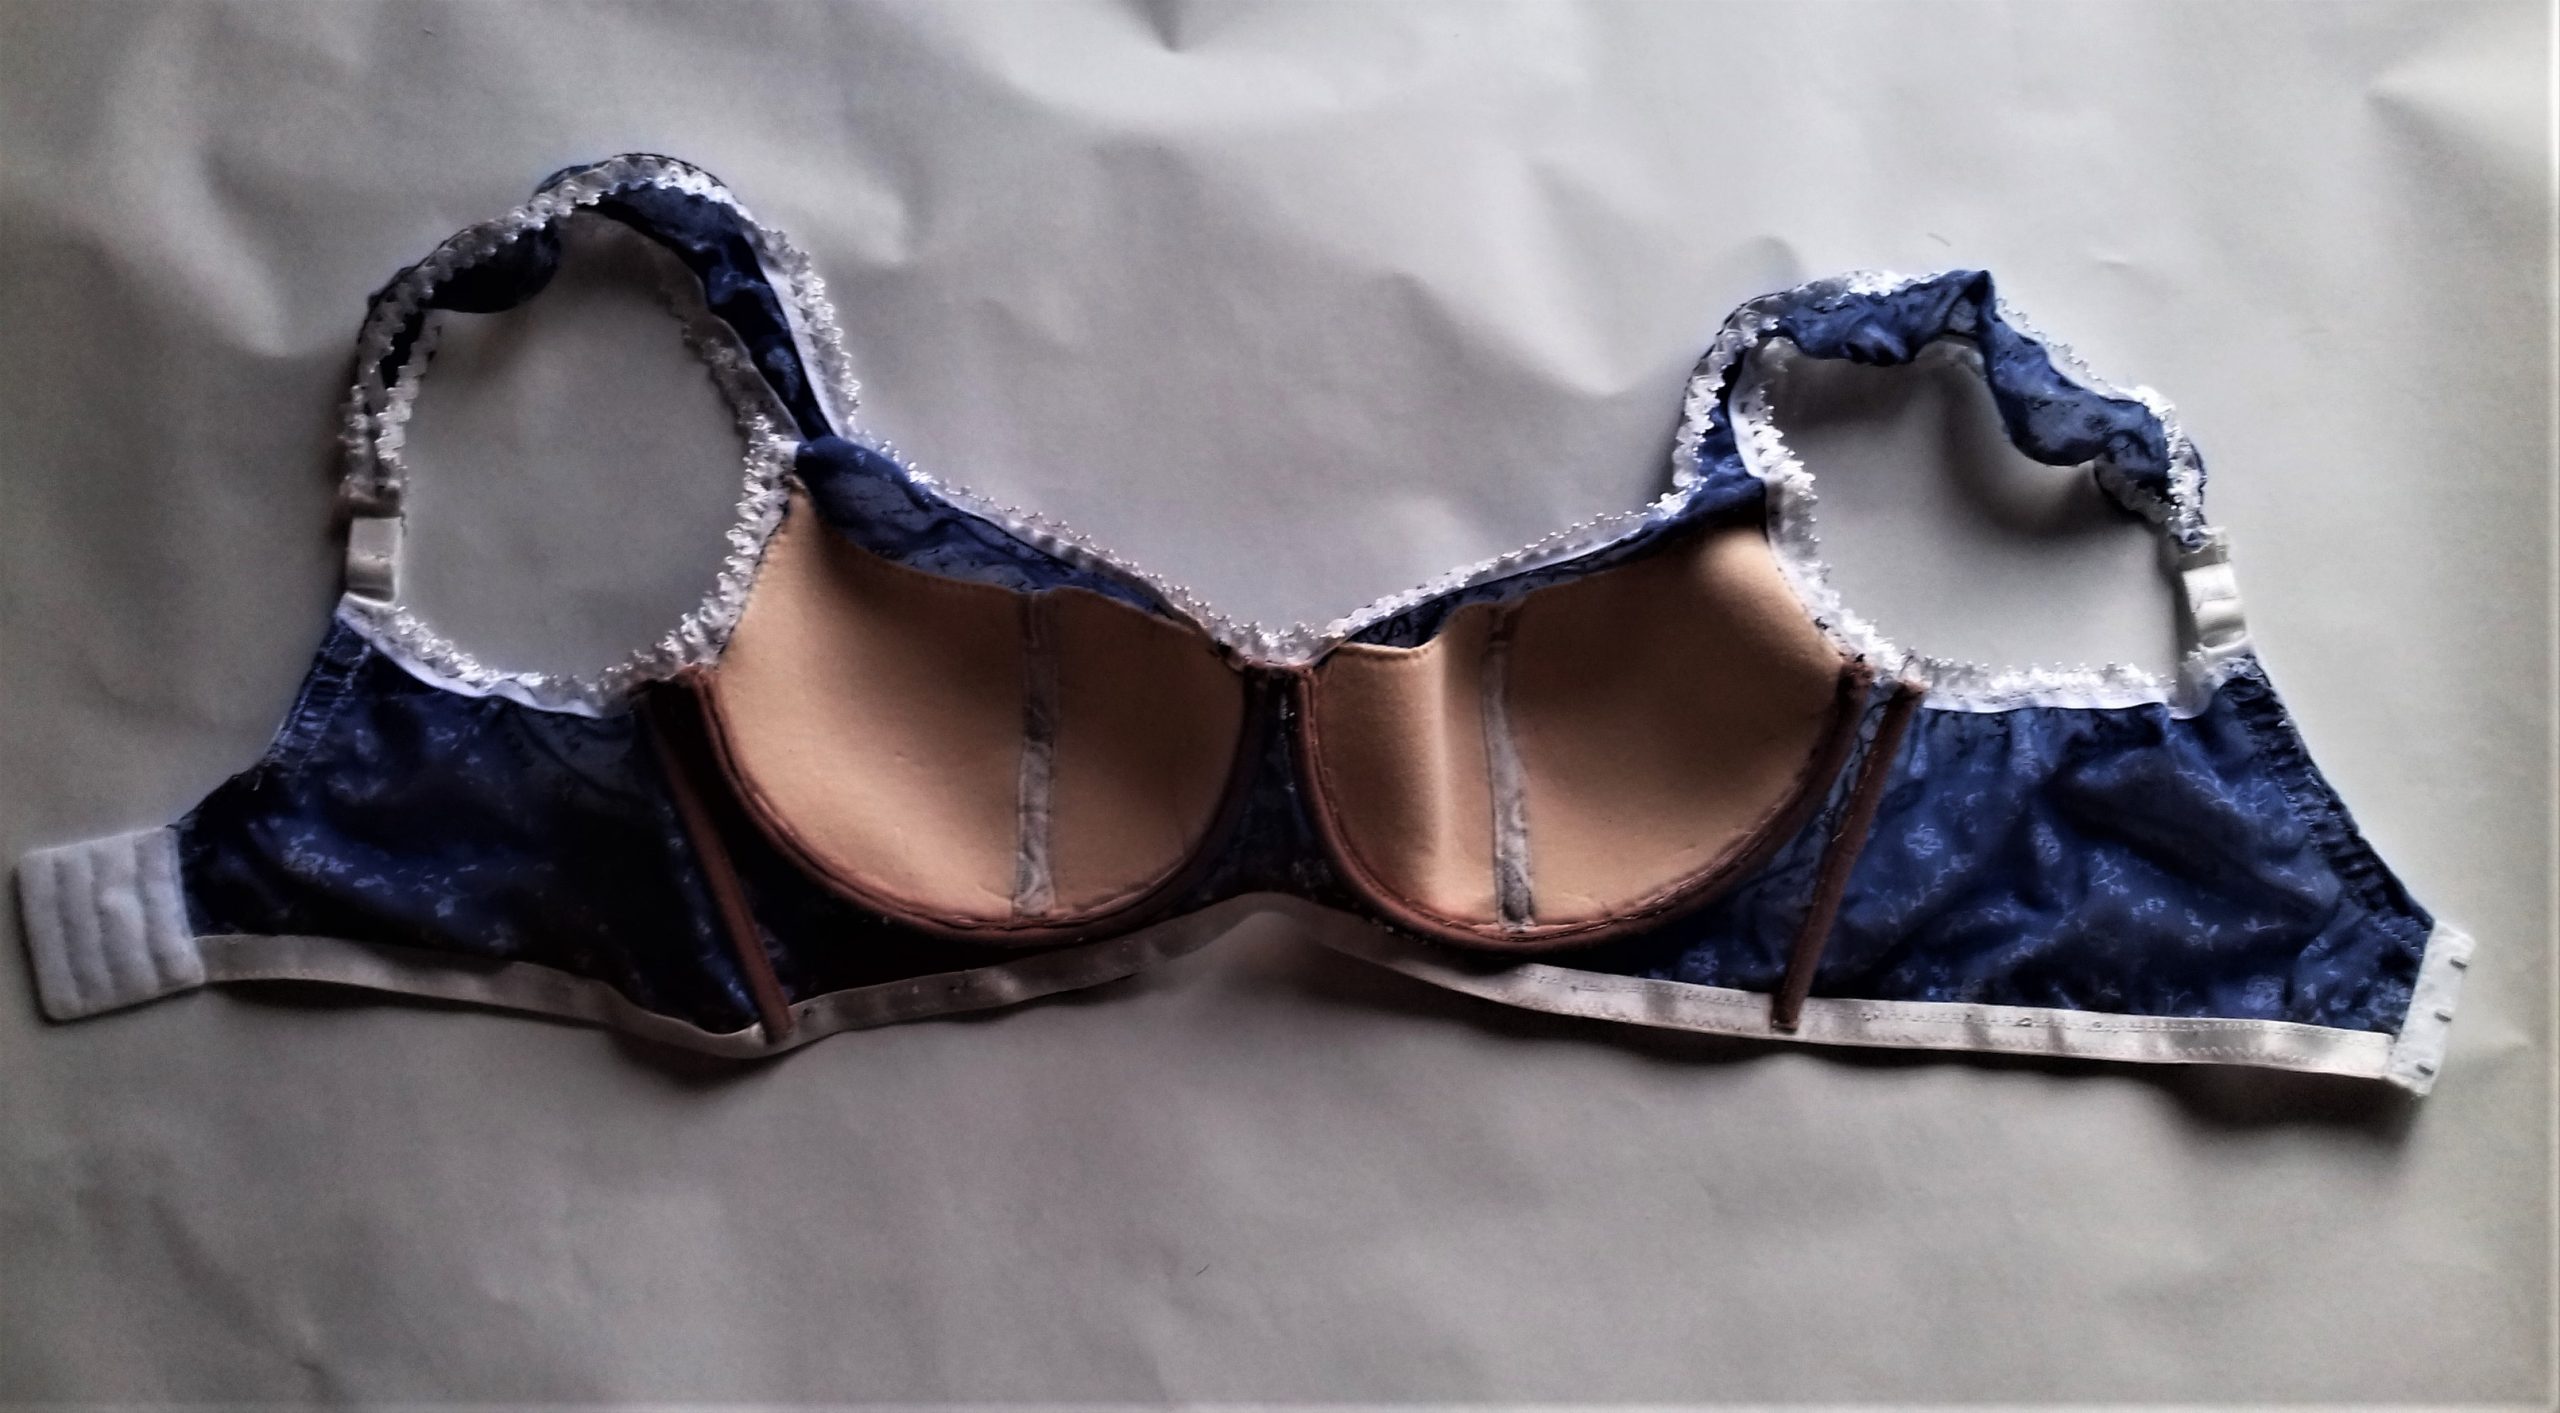 Foam cup bra pattern, Plus size bra sewing patterns